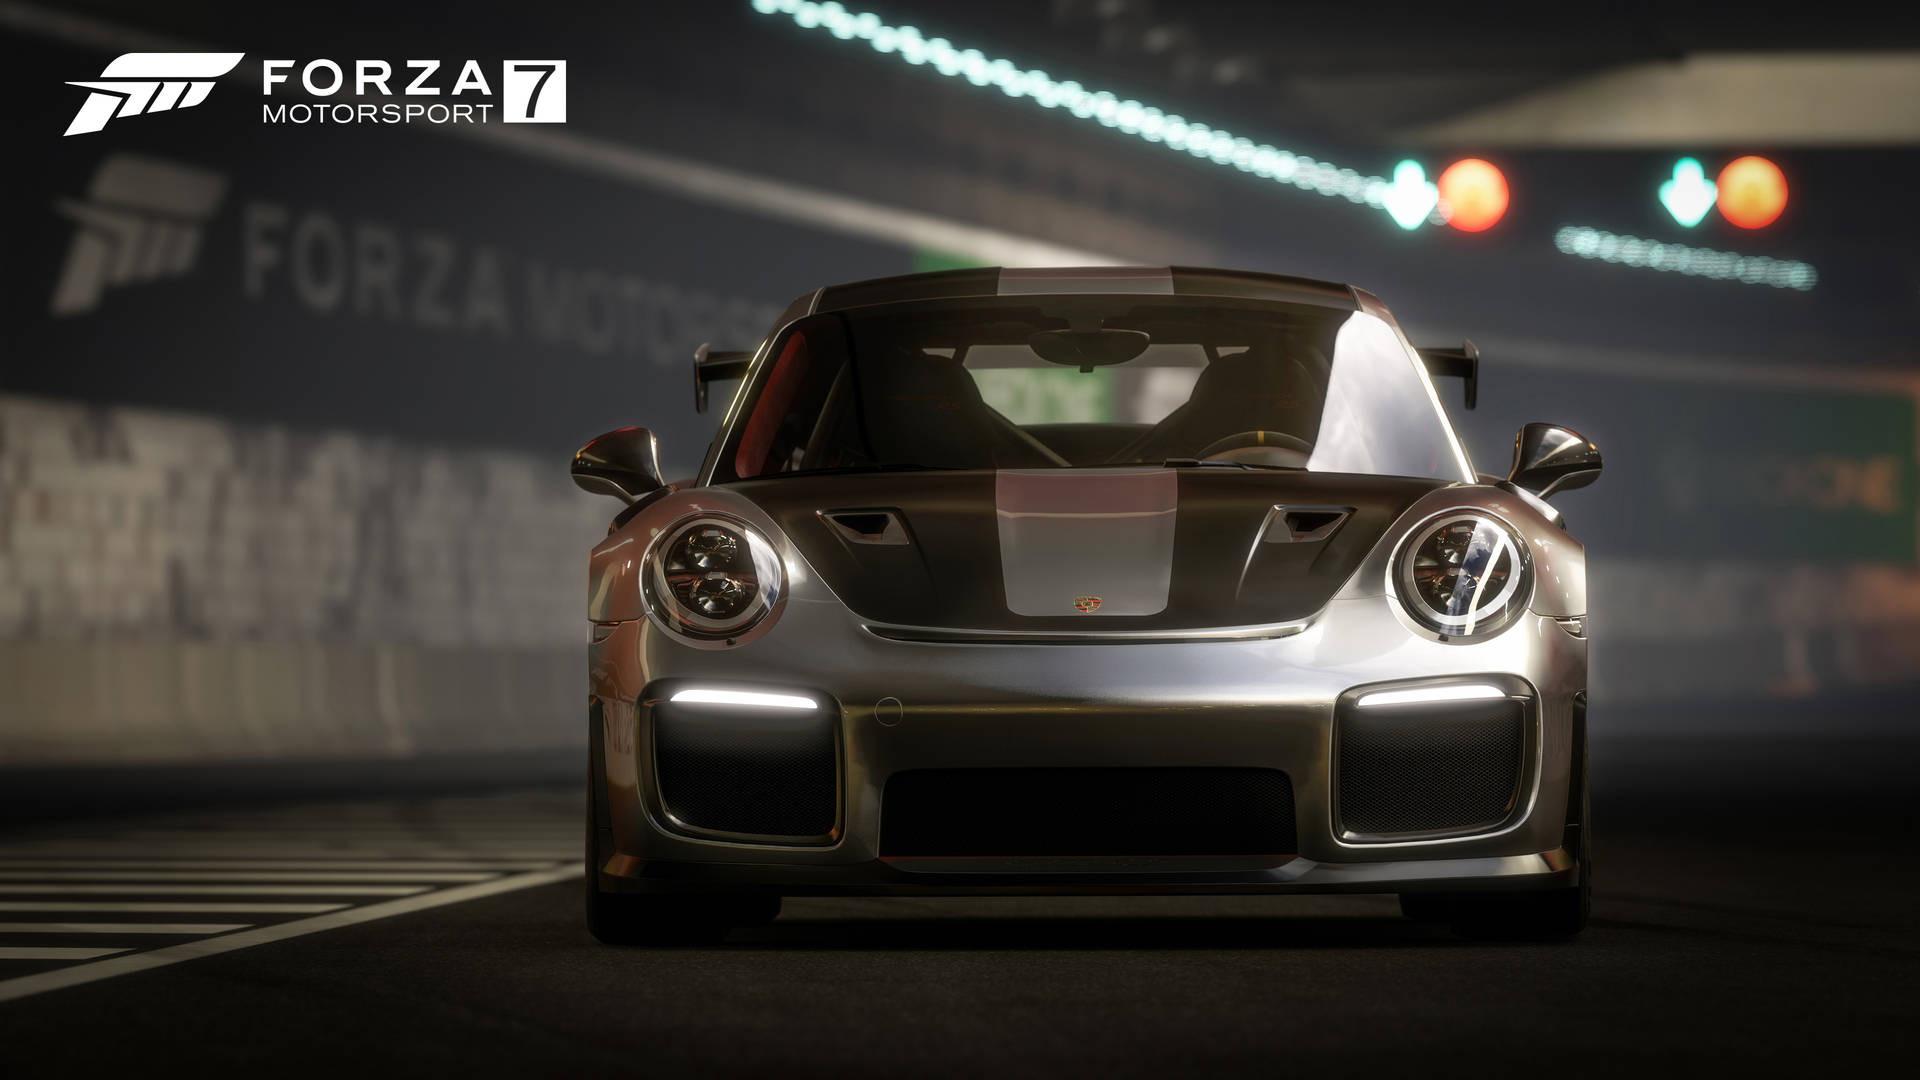 Forza Motorsport 7 Porsche 911 Gt2 Rs Background